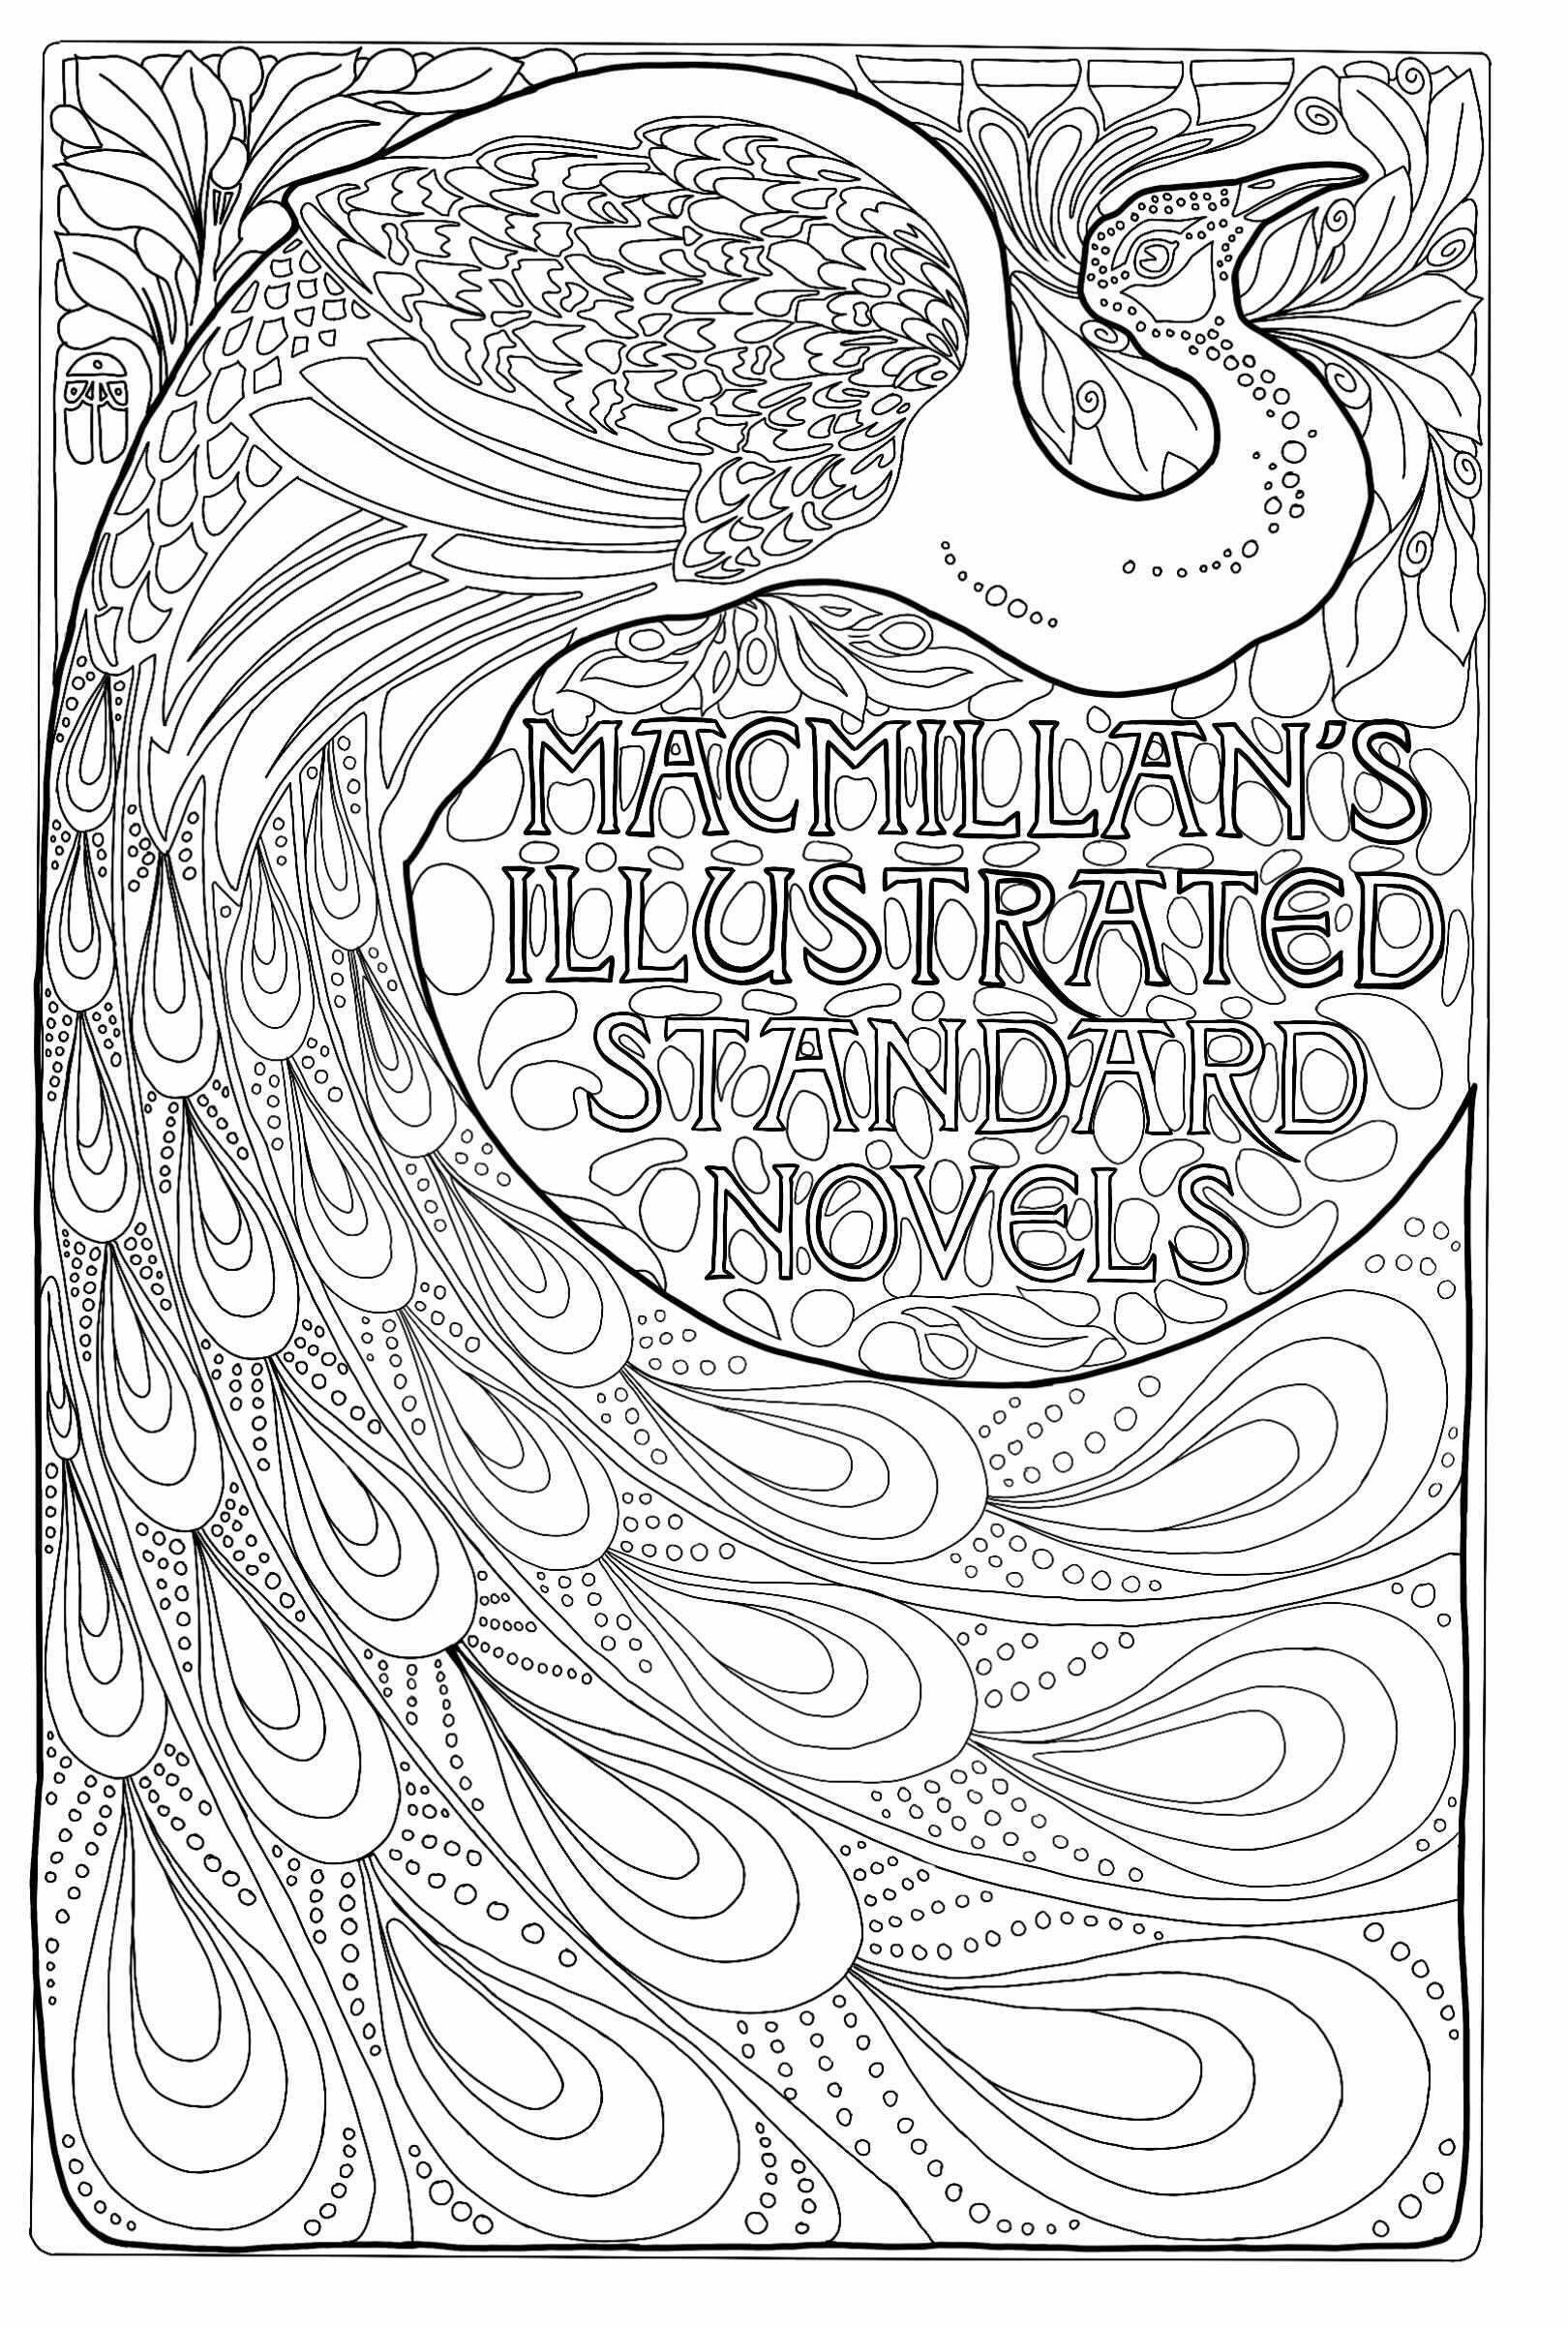 MacMillan's Illustrated Standard Novels: Capa de livro Art Nouveau com pavão (1896). Criado por Albert Angus Turbayne, ilustrador americano (1866, 1940).